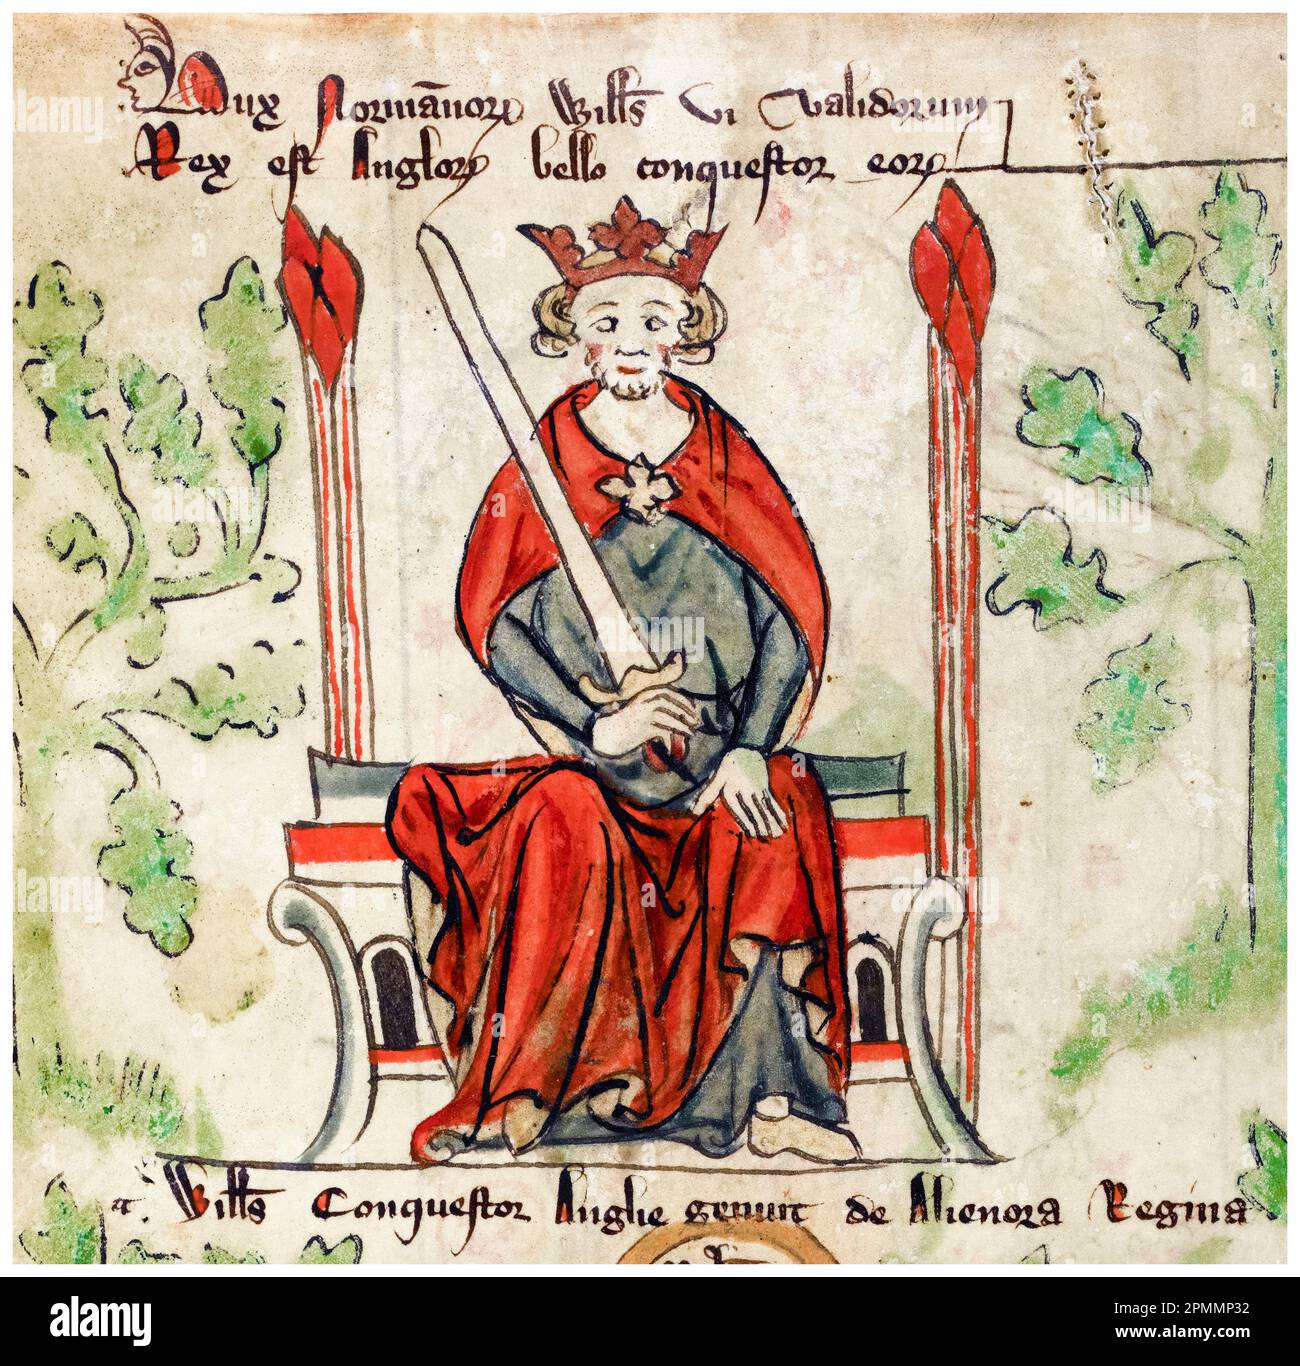 Wilhelm der Eroberer, Wilhelm I. von England (ca. 1028-1087), erster Norman, König von England (1066-1087), beleuchtetes Manuskript-Porträtgemälde von Peter von Langtoft, 1307-1327 Stockfoto